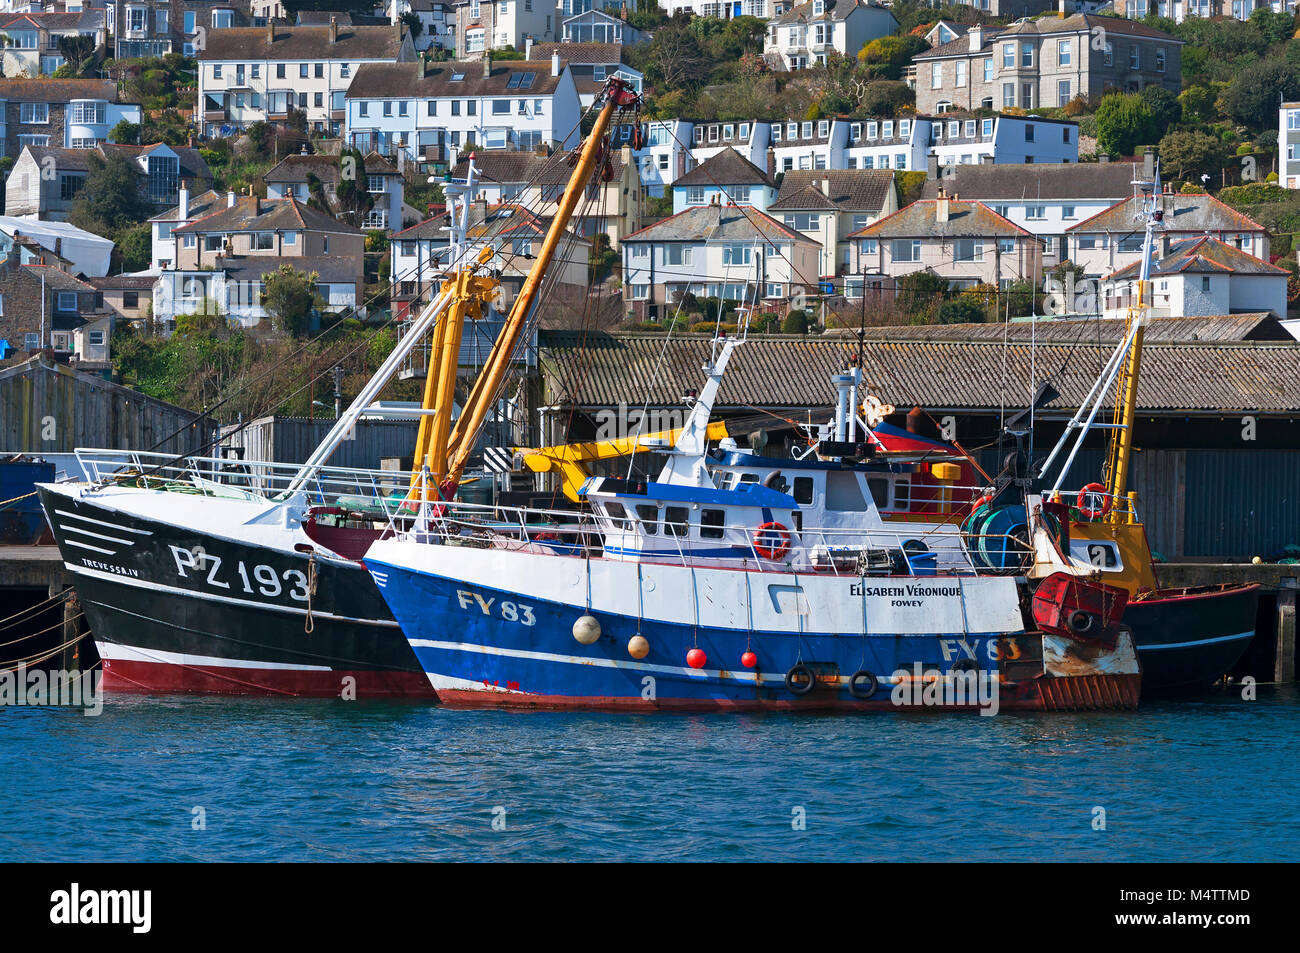 Cornish Fischwirtschaft Trawler im cornish Hafen Hafen von Newlyn, Penzance, Cornwall, England, Großbritannien, Großbritannien. Stockfoto